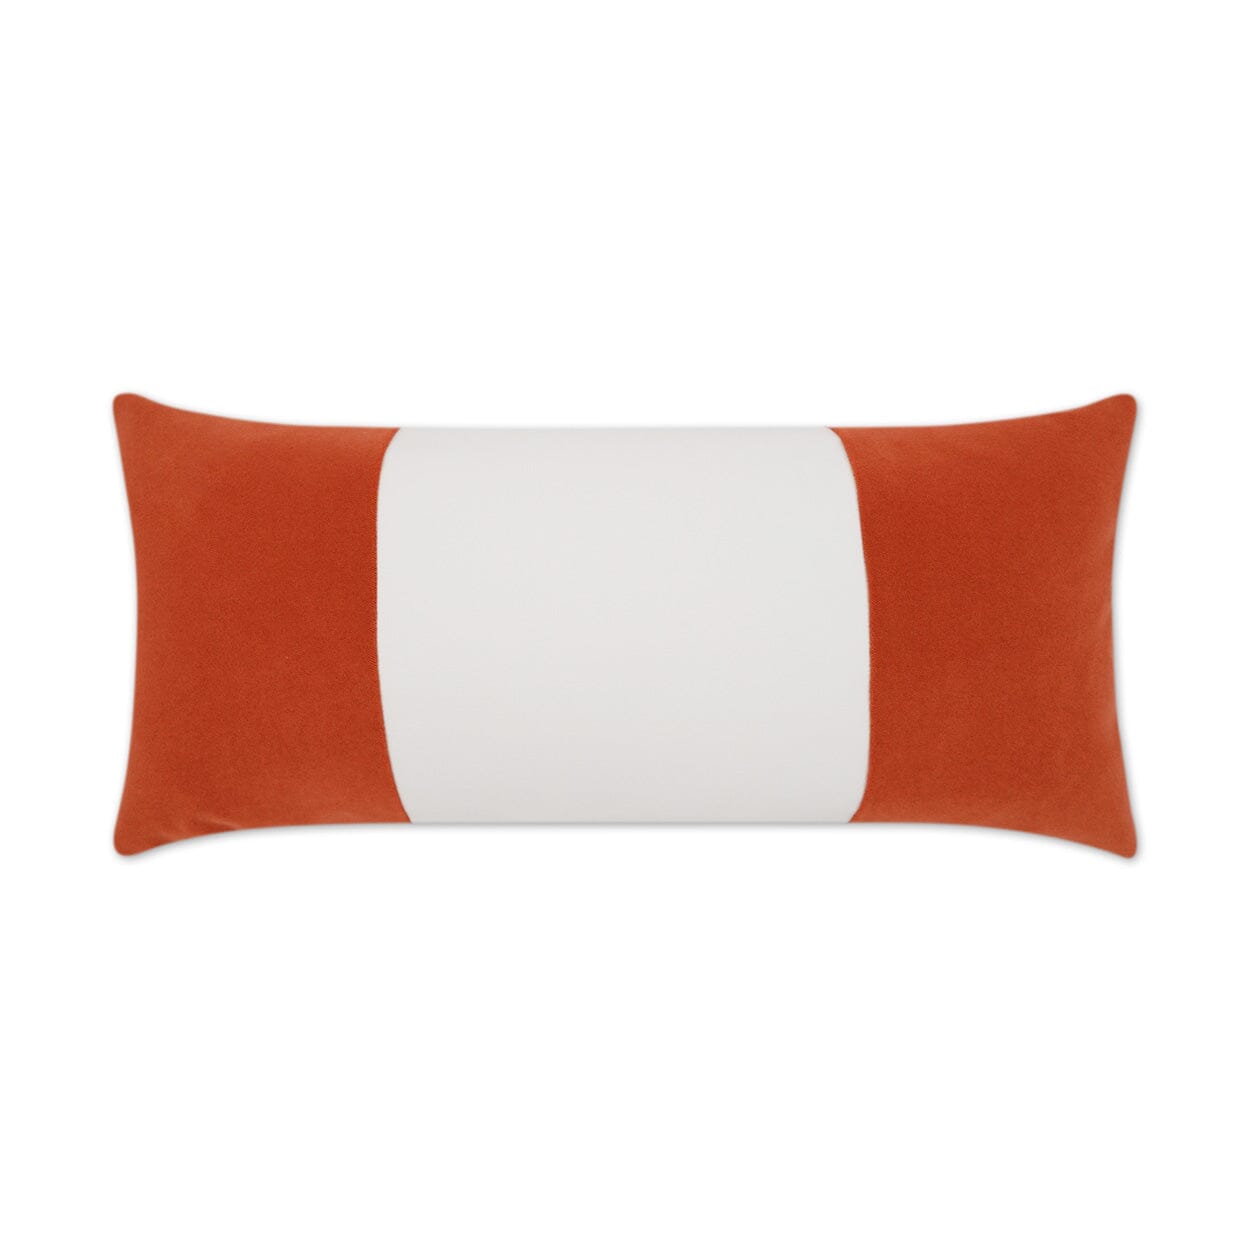 D.V. Kap 12" x 24" Outdoor Lumbar Pillow | Sundance Band Orange Lumbar Pillows D.V Kap Outdoor